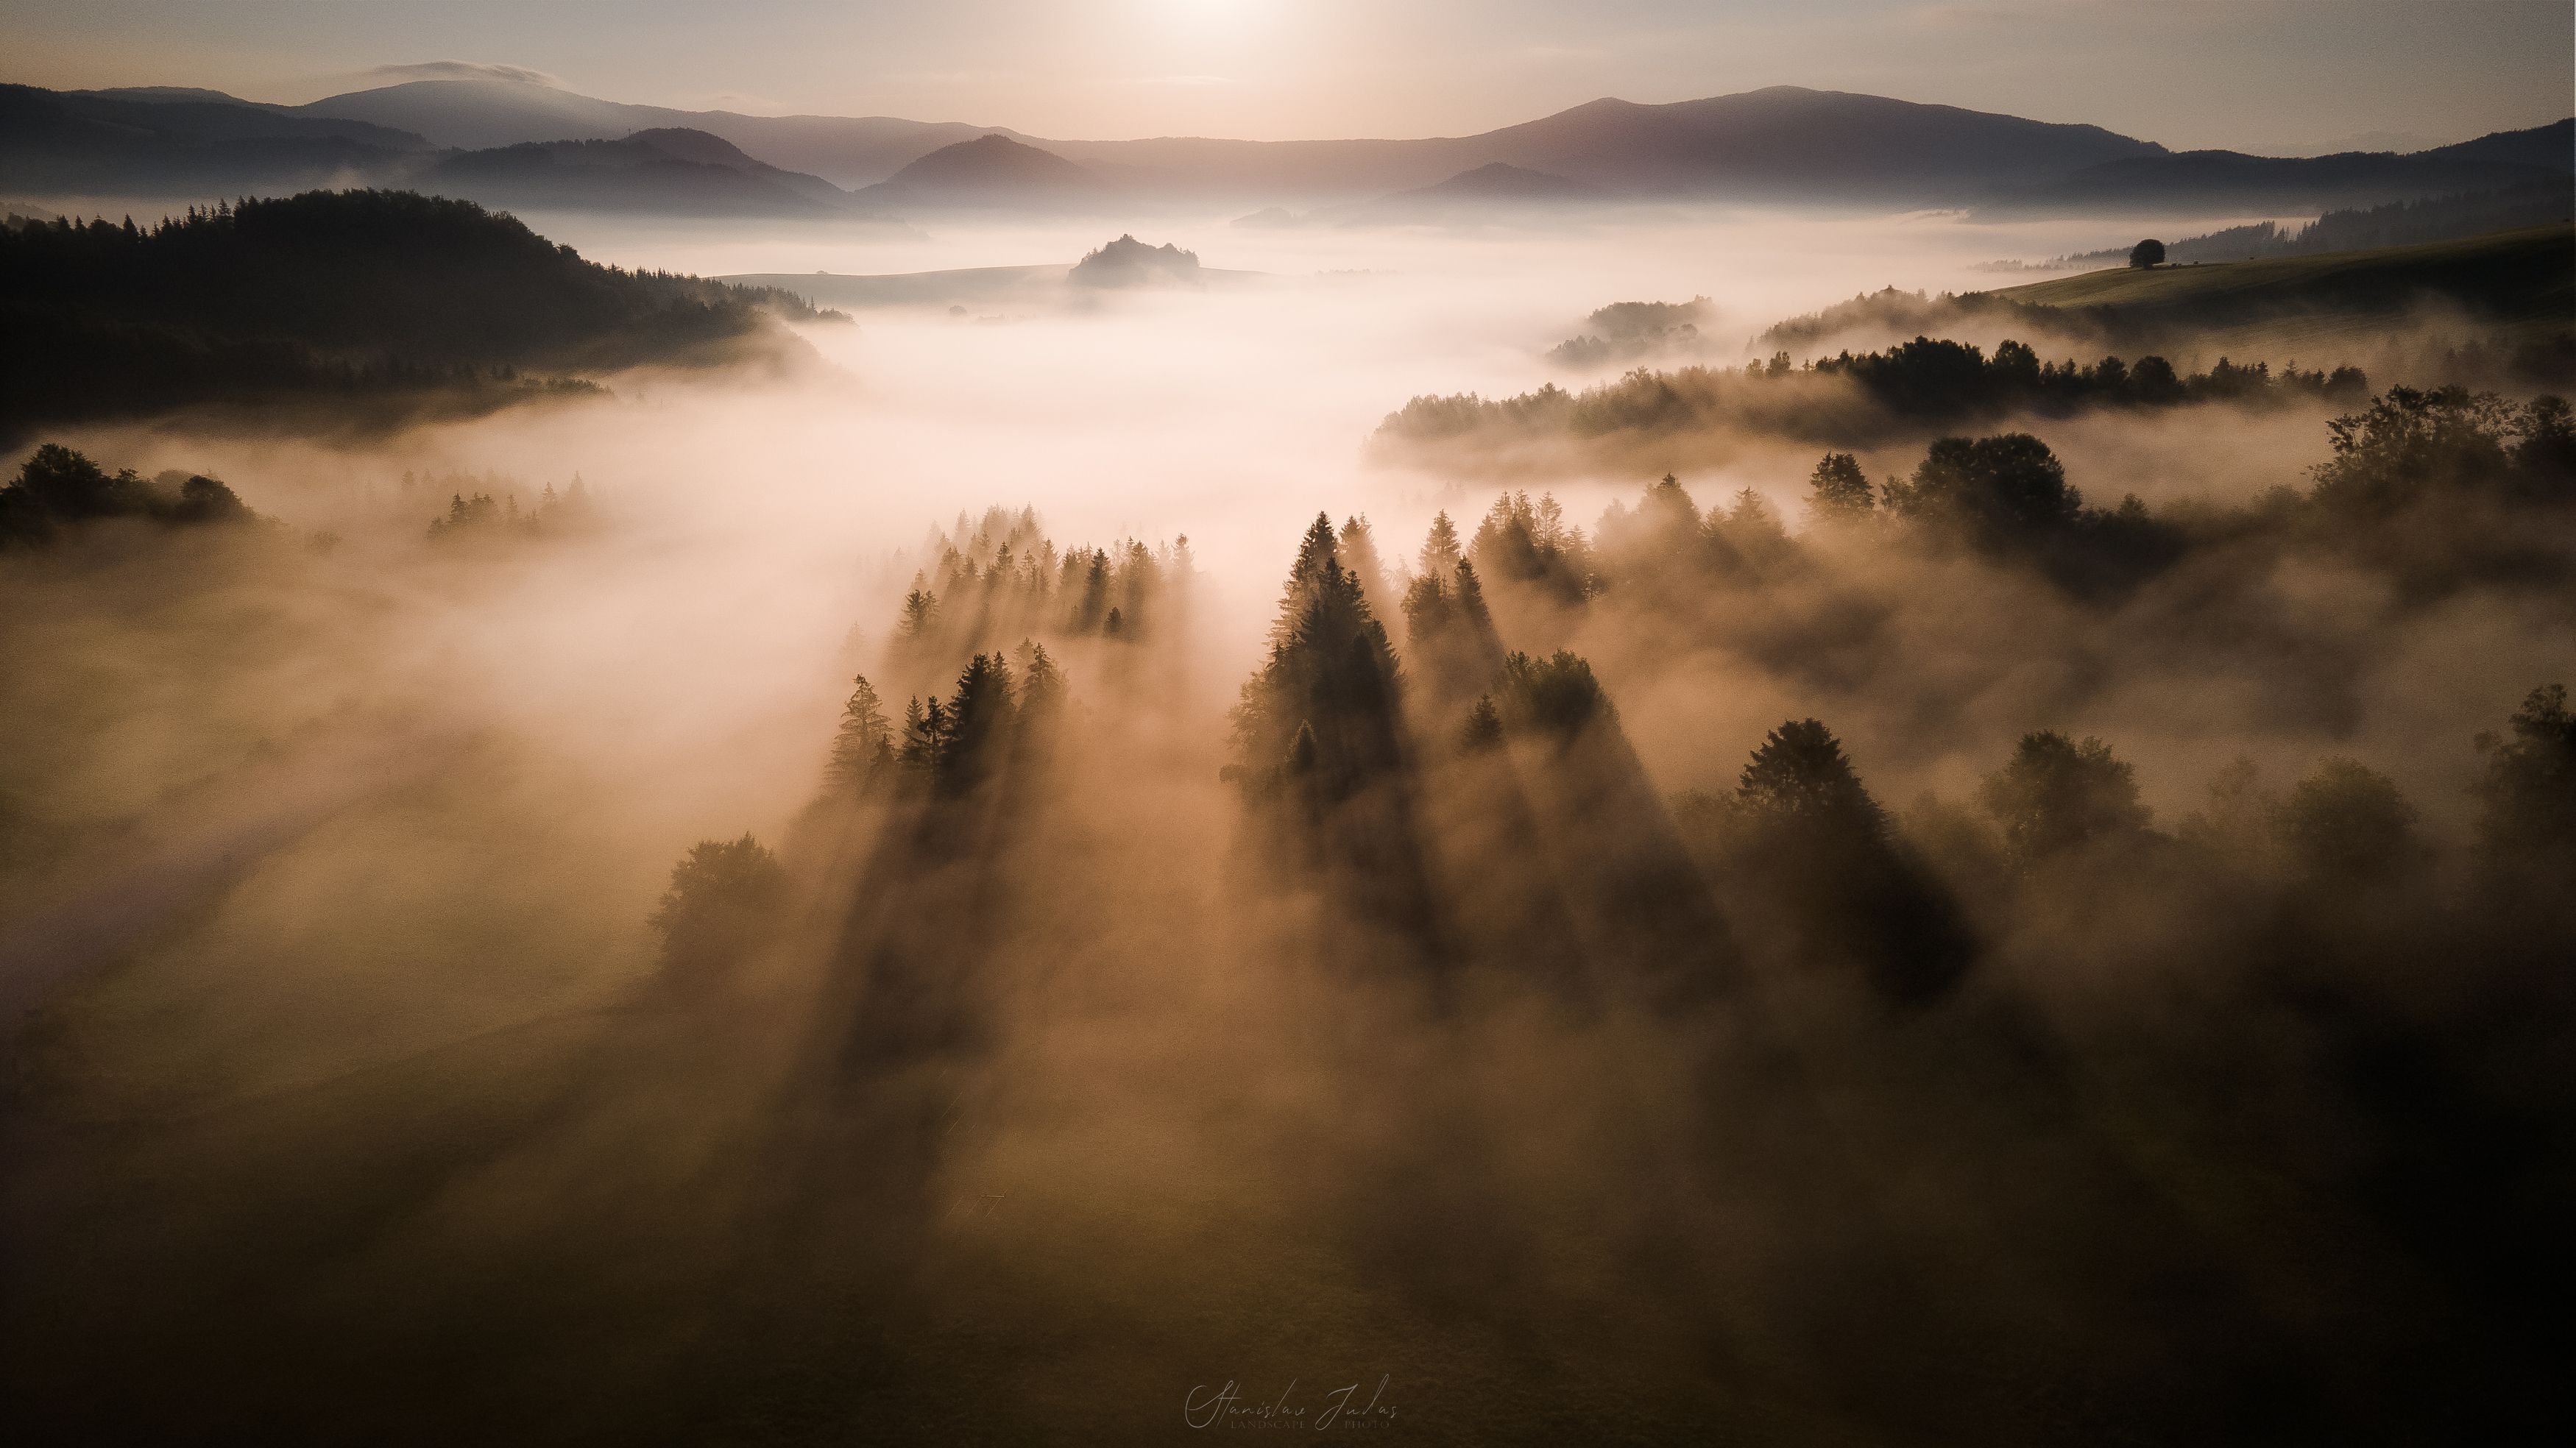 Sunrise, mala fatra, mountain, fog, nikon, Stanislav Judas